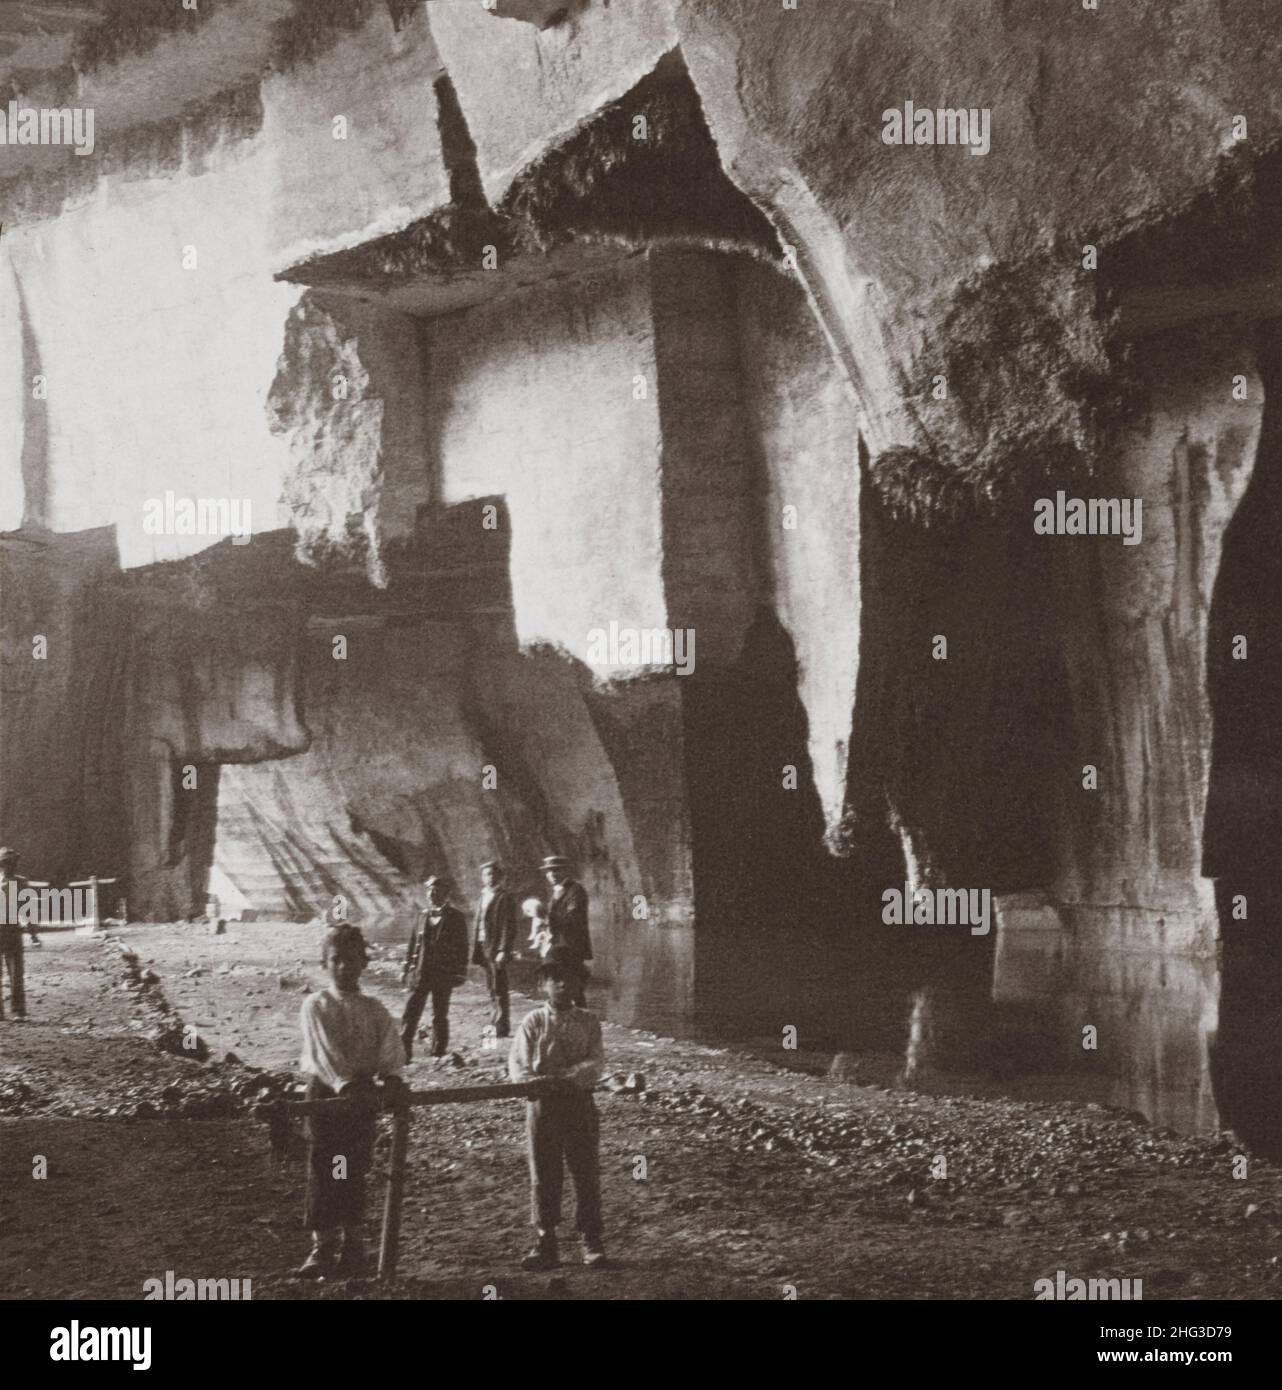 Foto vintage de la antigua Siracusa. Una pared de roca dentellada, el trabajo de los quarreros en los siglos 5th y 4th B. C., antigua Siracusa, Sicilia. 1907 Foto de stock